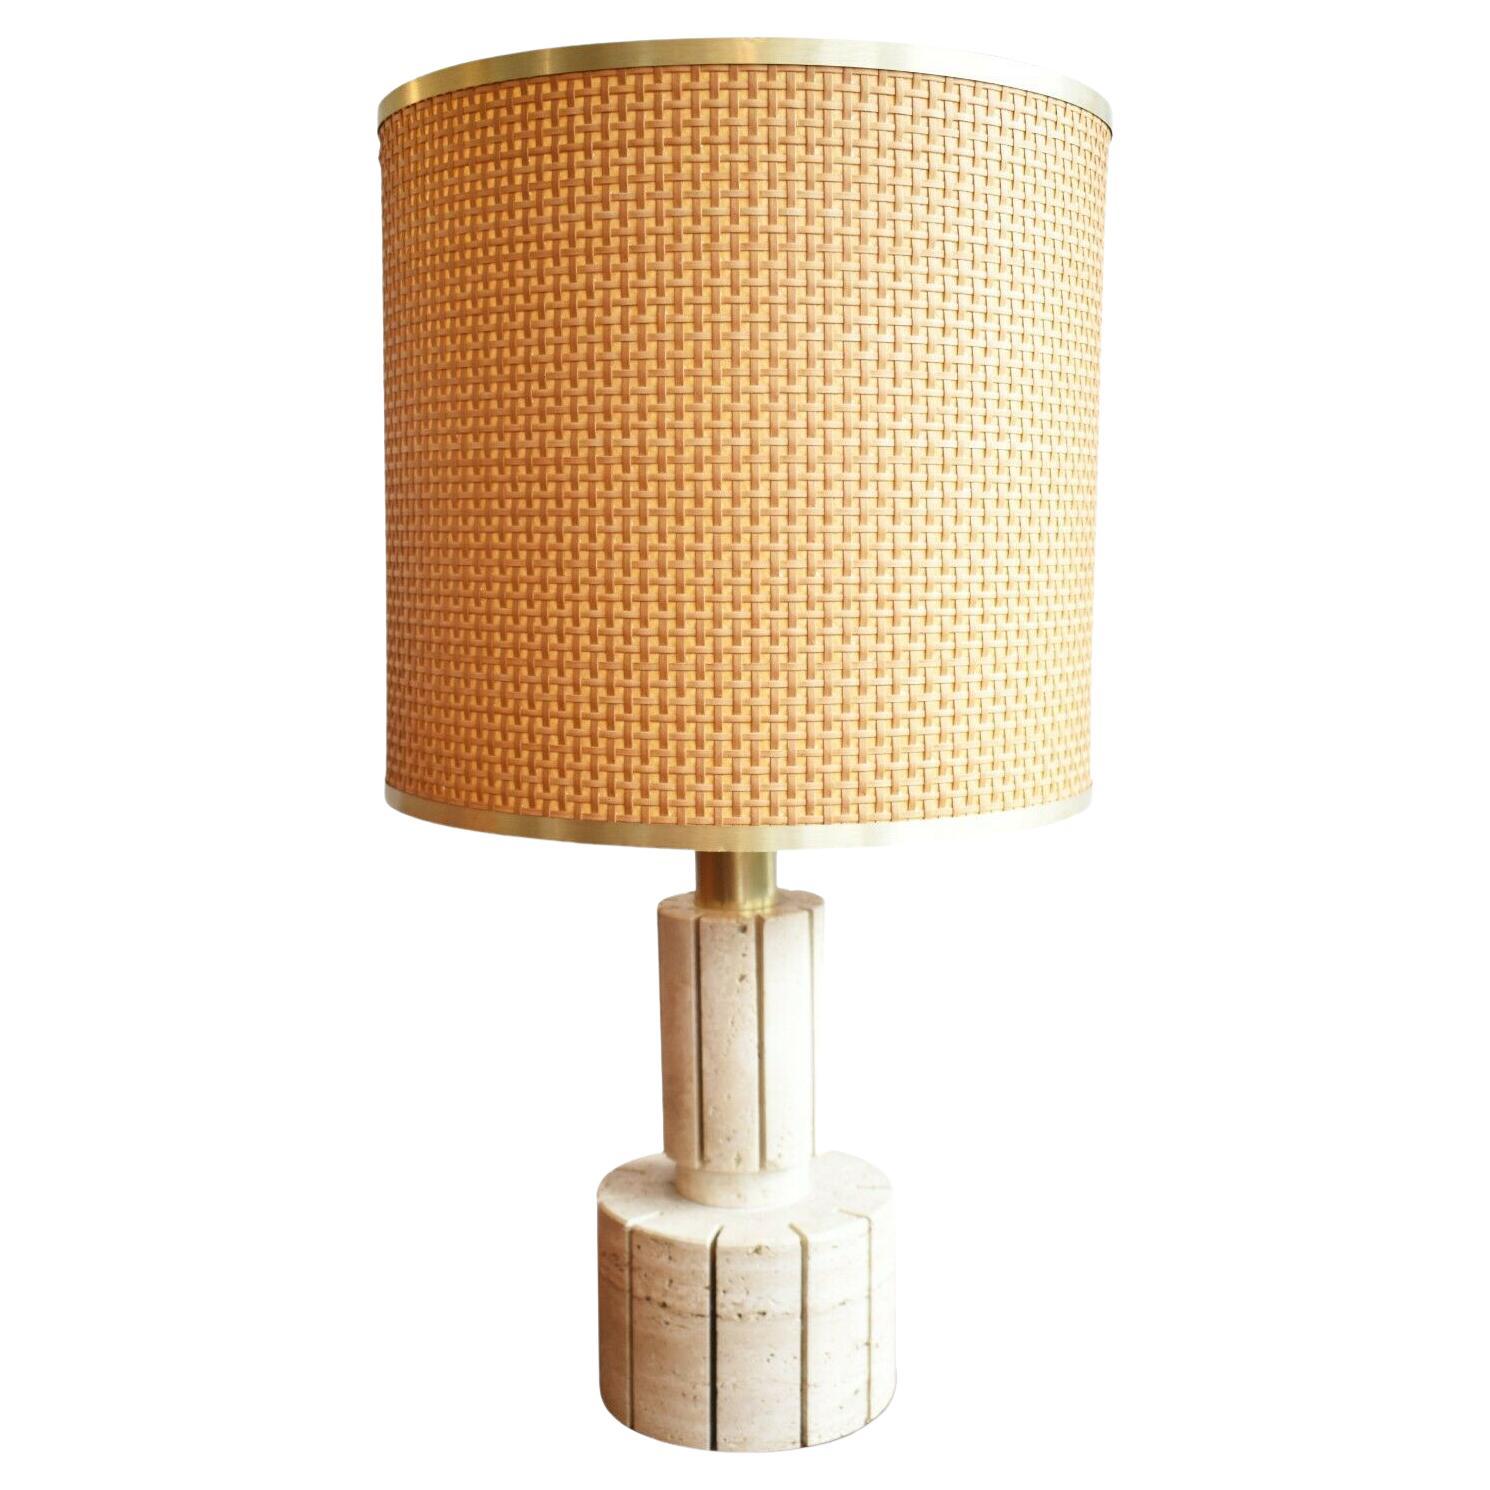 Italian 1970s Bamboo and Travertine Lamp